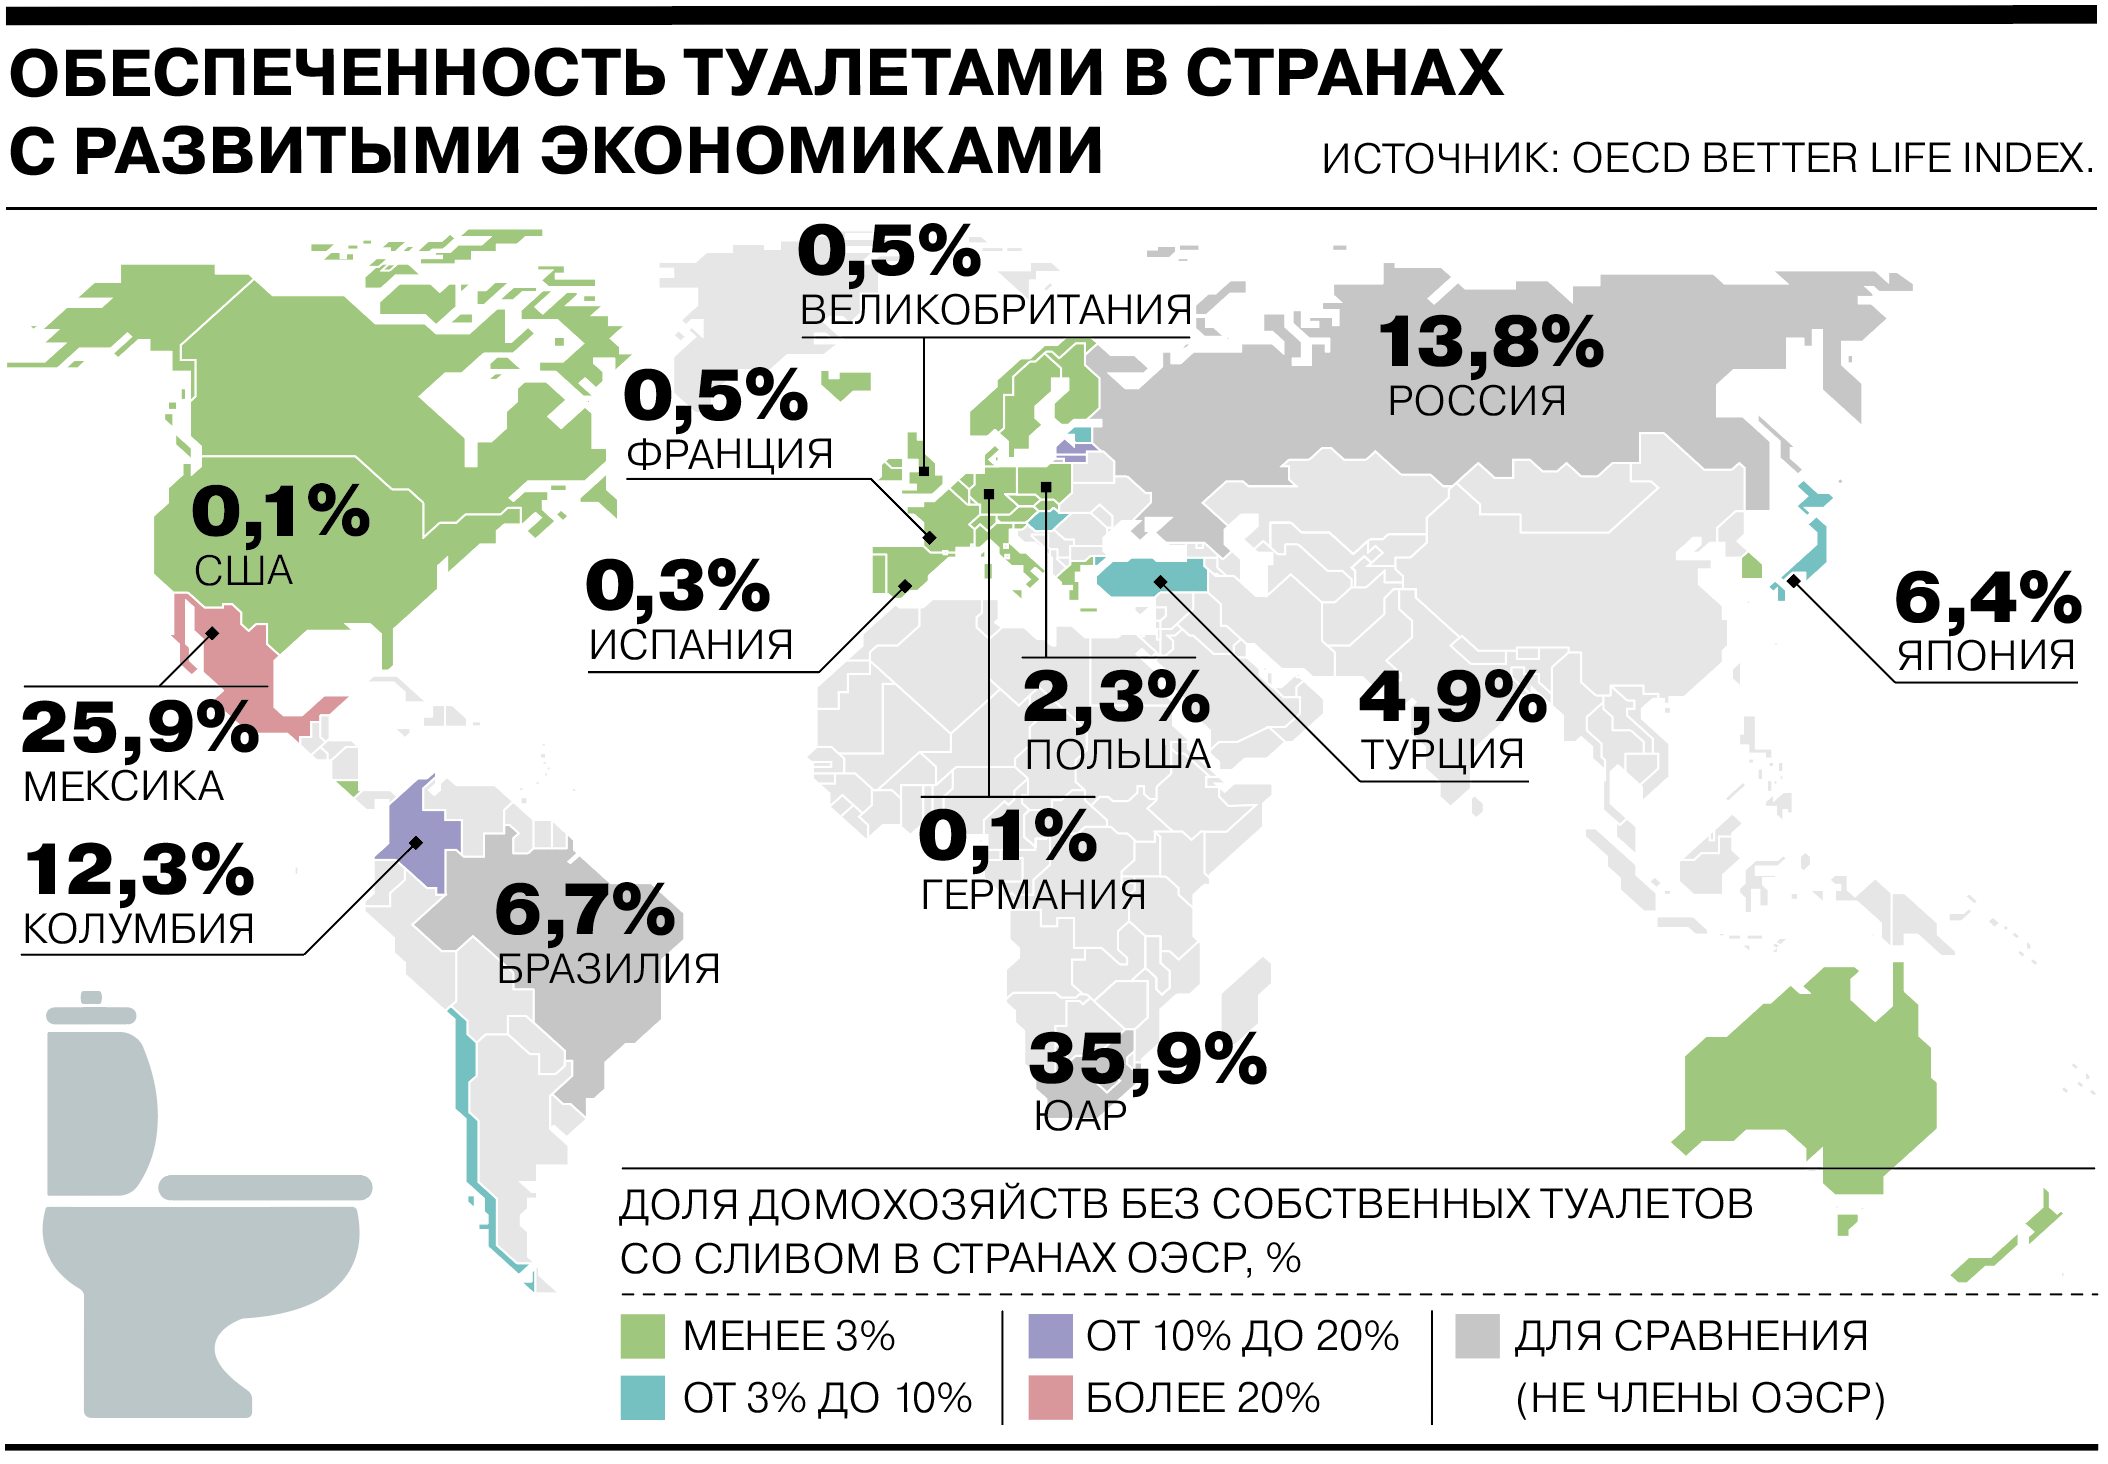 Население страны 2022 россия. Обеспеченность туалетами в мире. Страны с развивающейся экономикой. Туалеты в разных странах.